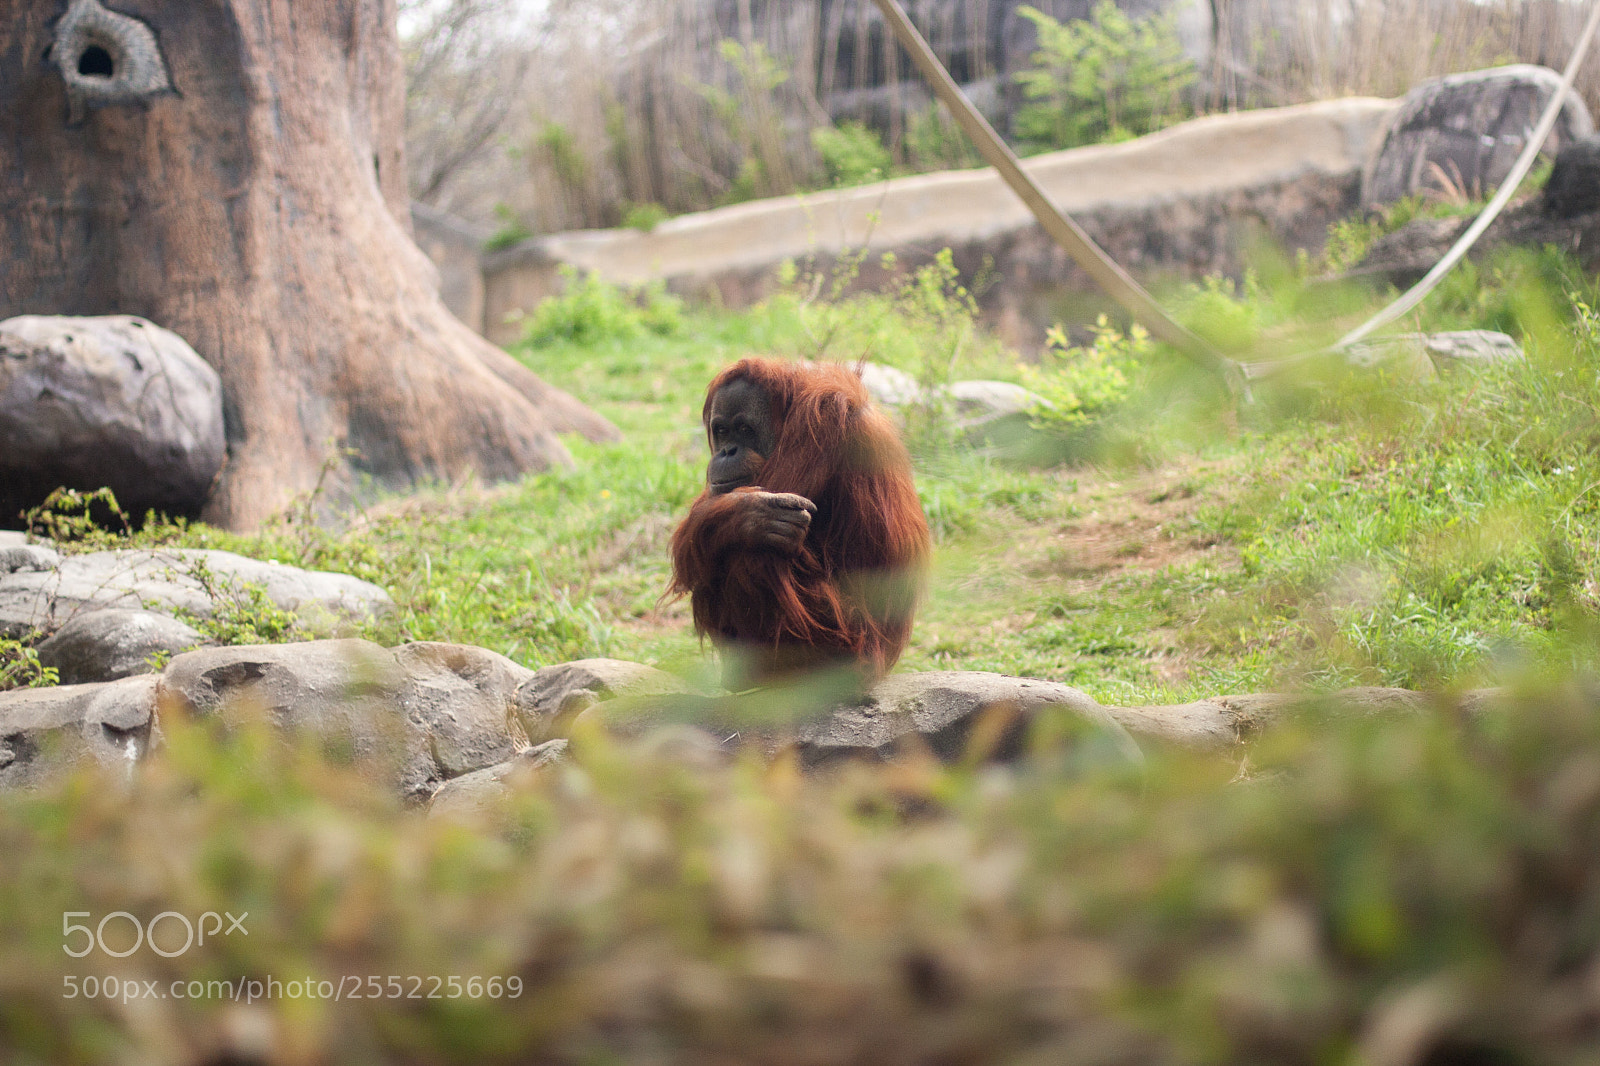 Canon EOS 40D sample photo. Pongo abelii (sumatran orangutan) photography